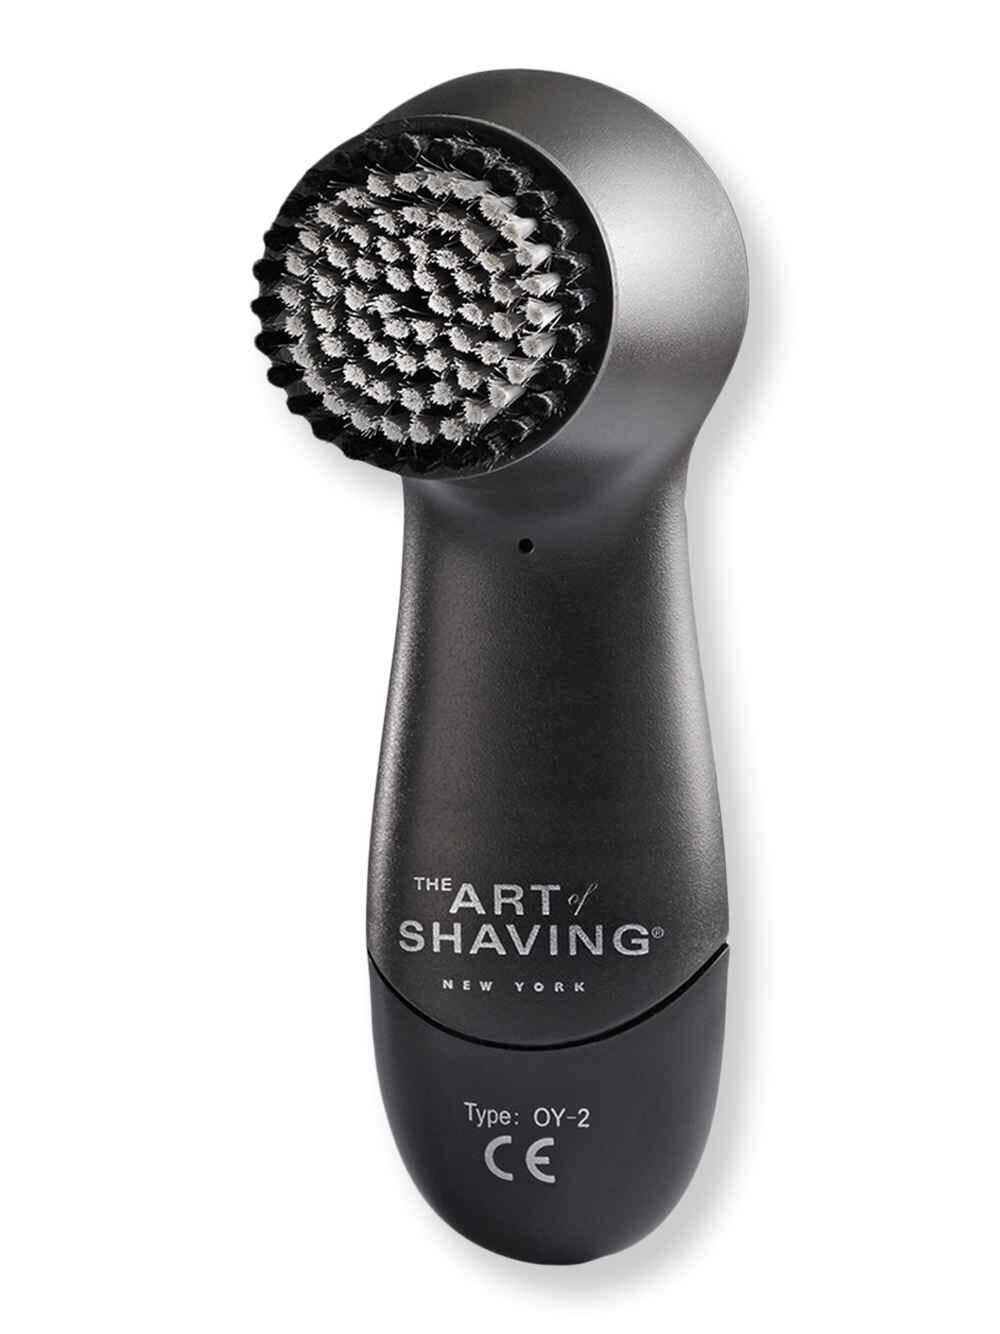 The Art of Shaving The Art of Shaving Powerbrush Spin Shaving Accessories 